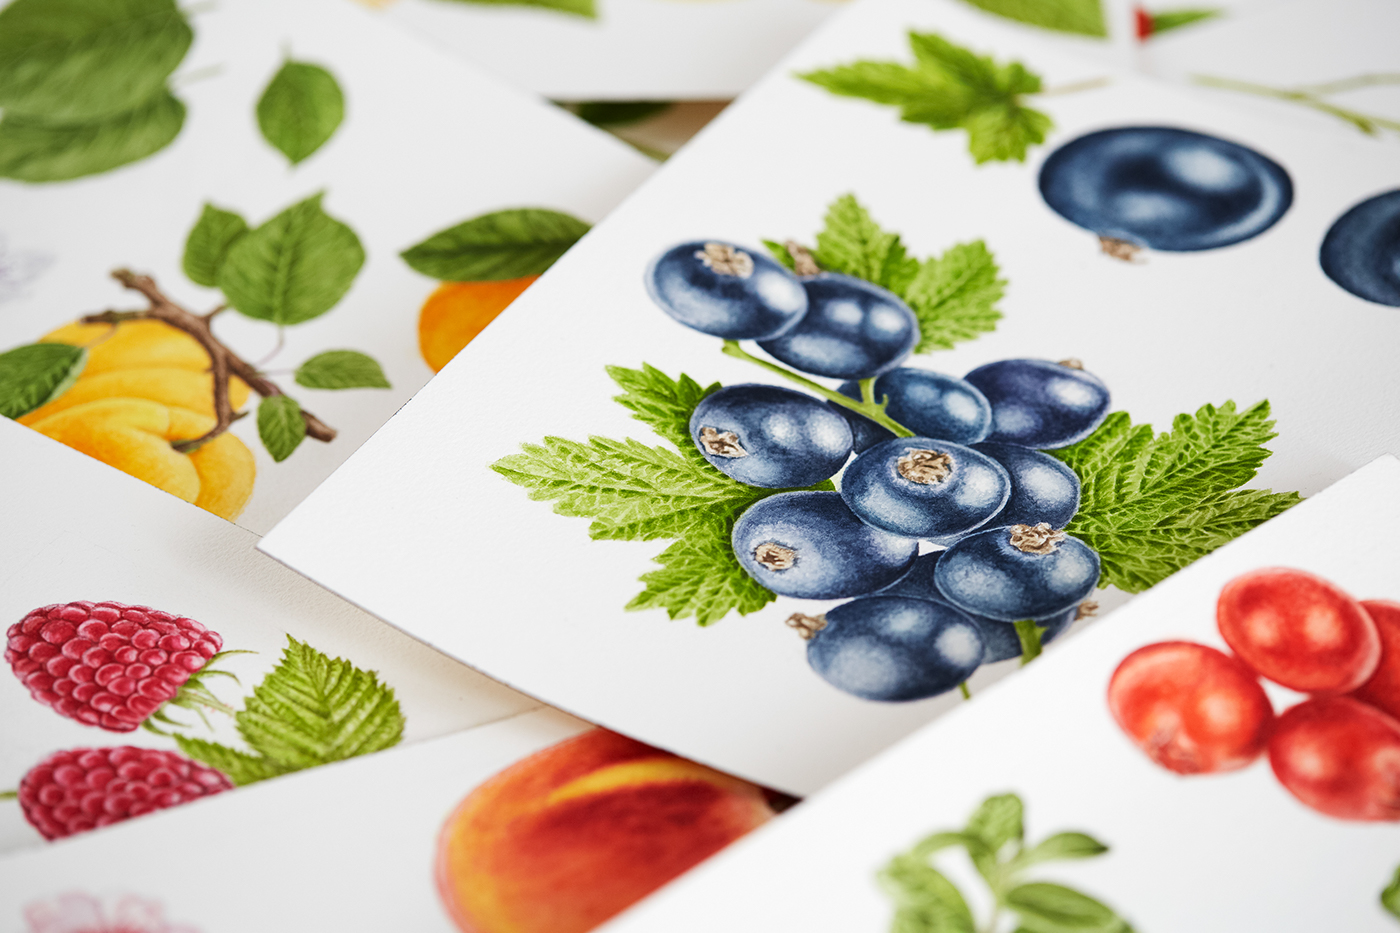 jam fruits berries Conserve packaging design farm nostalgic heimefrå Lerum traditional